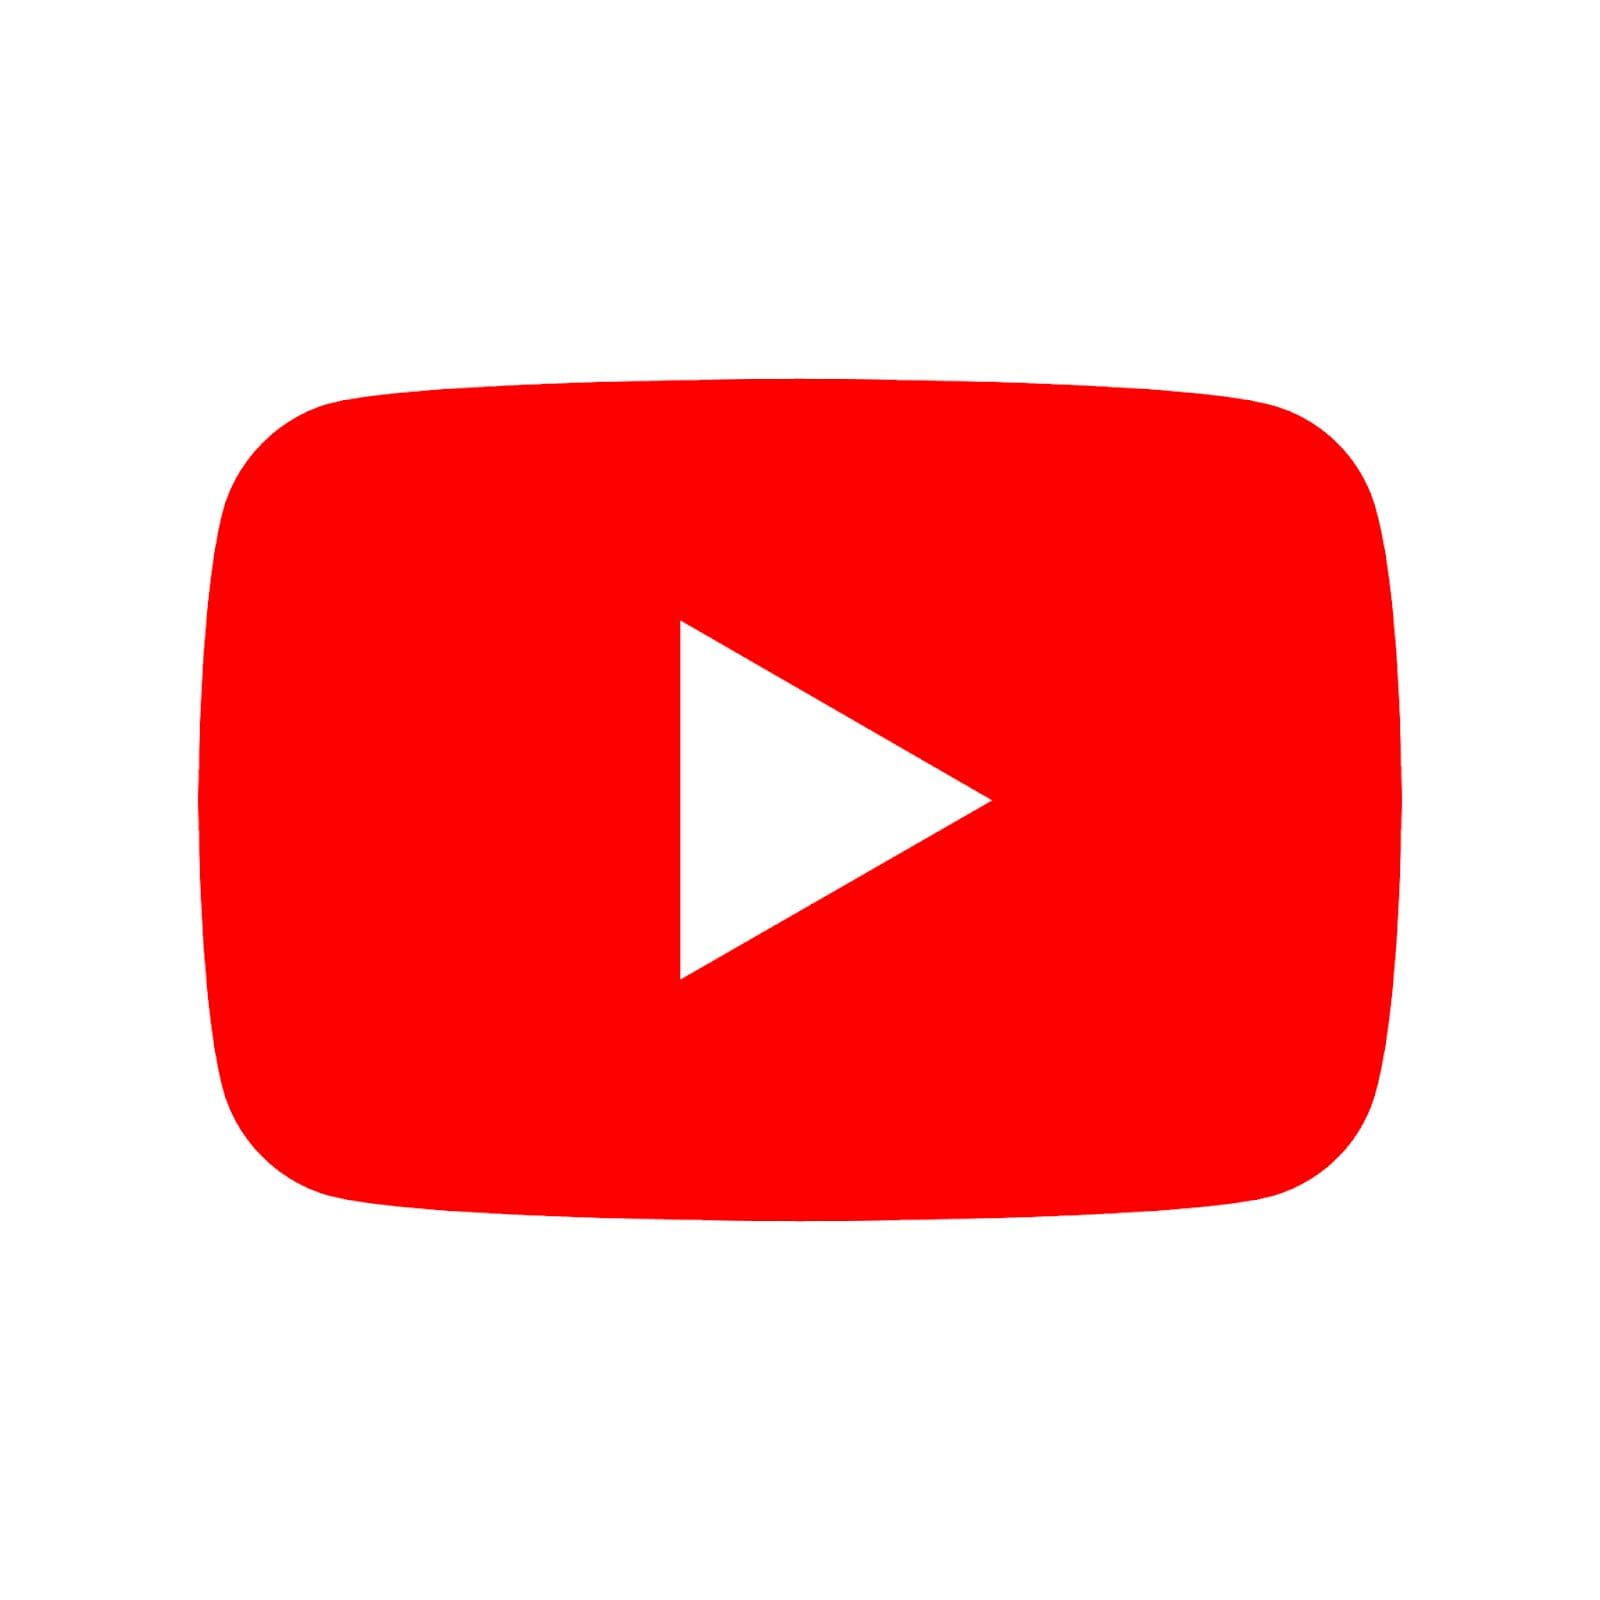 youtube-kehrt-bei-der-zensur-von-fehlinformationen-zur-wahl-um